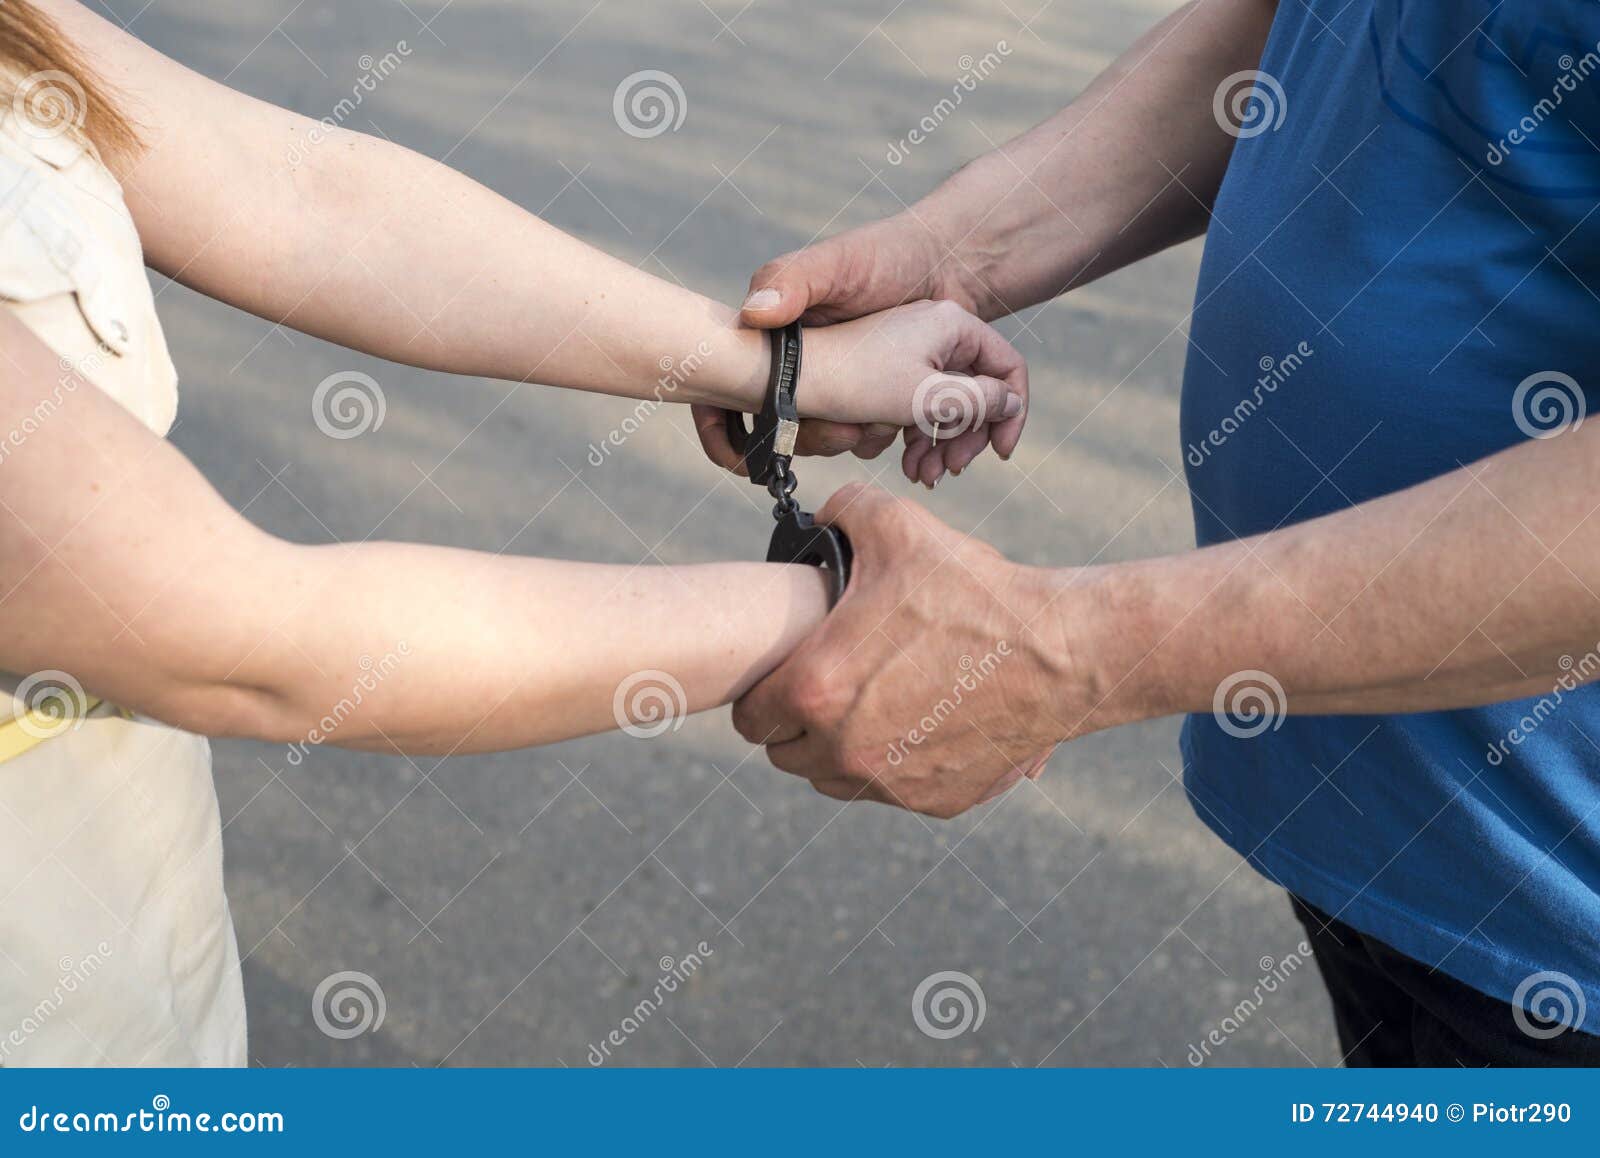 Парень надевает наручники. Надевают наручники. Задержанный в наручниках. Наручники полицейские на руках.